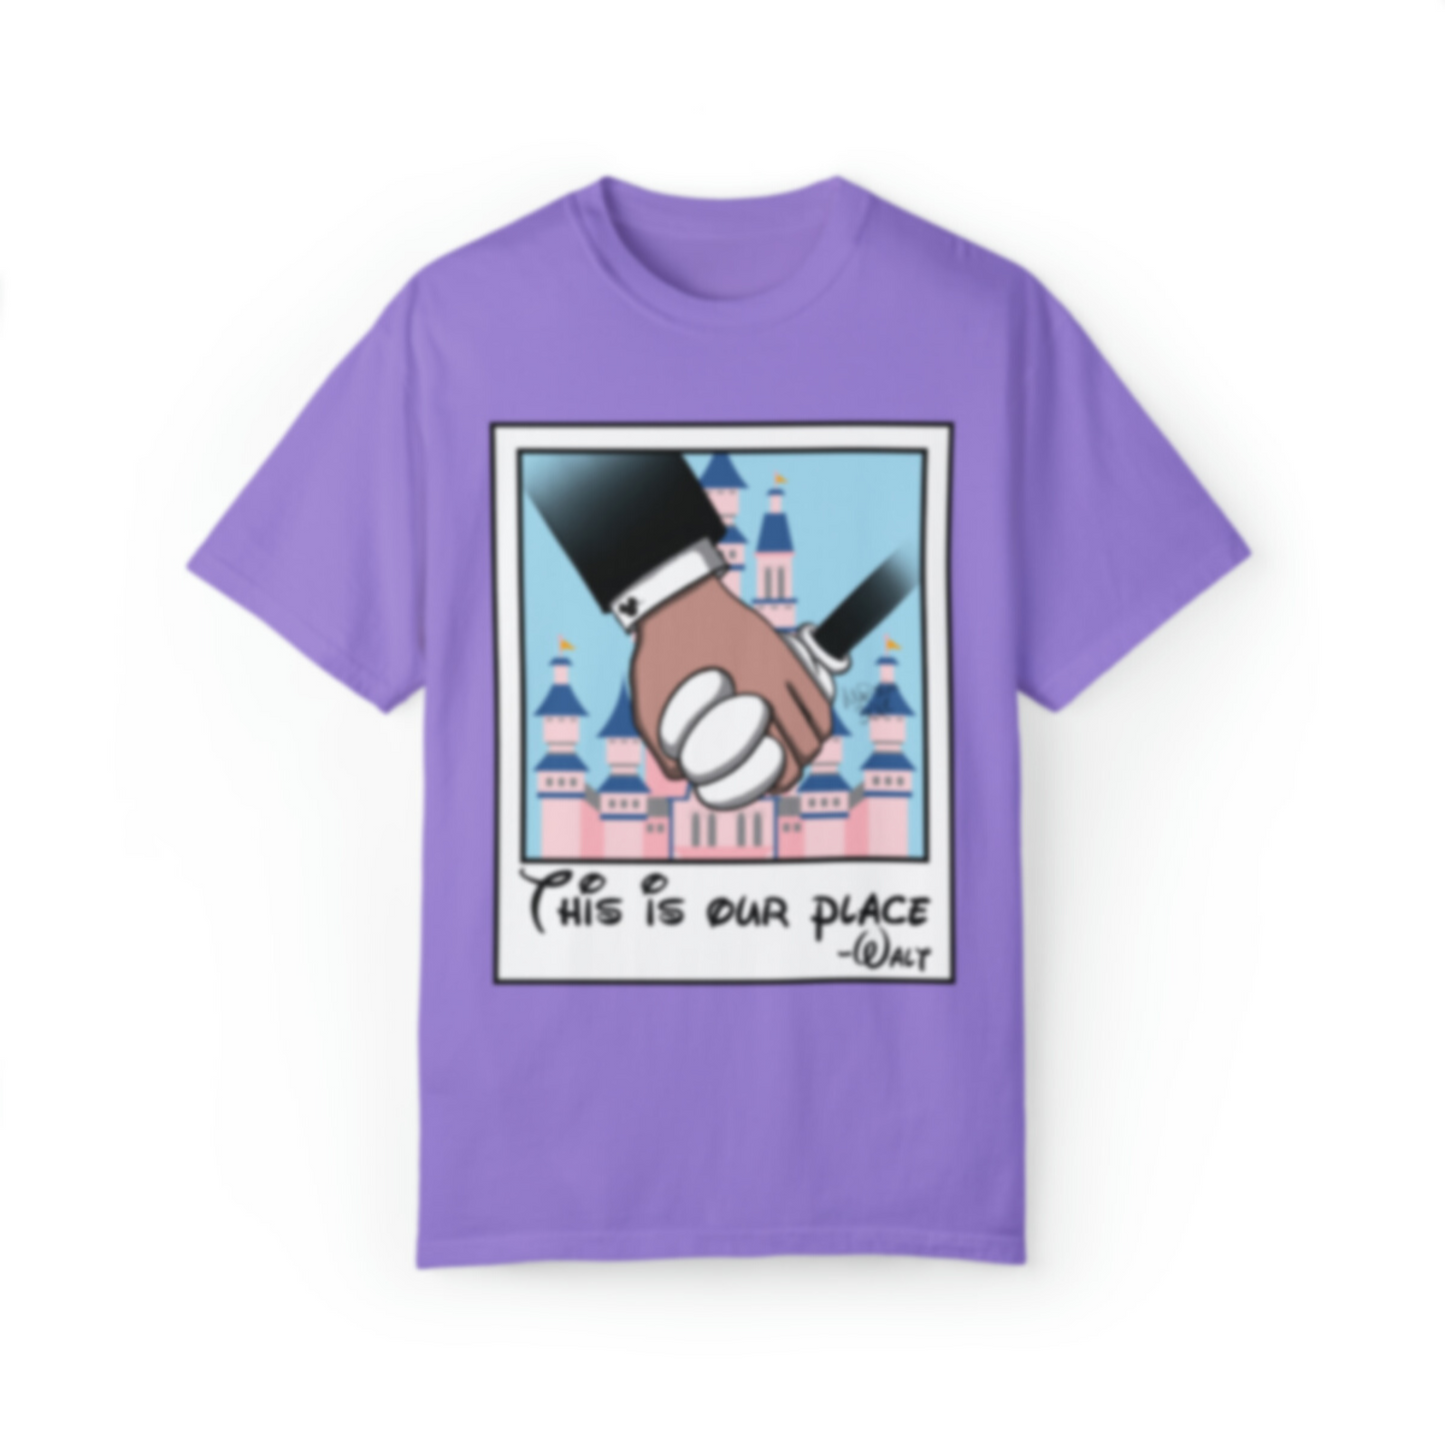 Our Place T-Shirt | Adult Comfort Colors Unisex